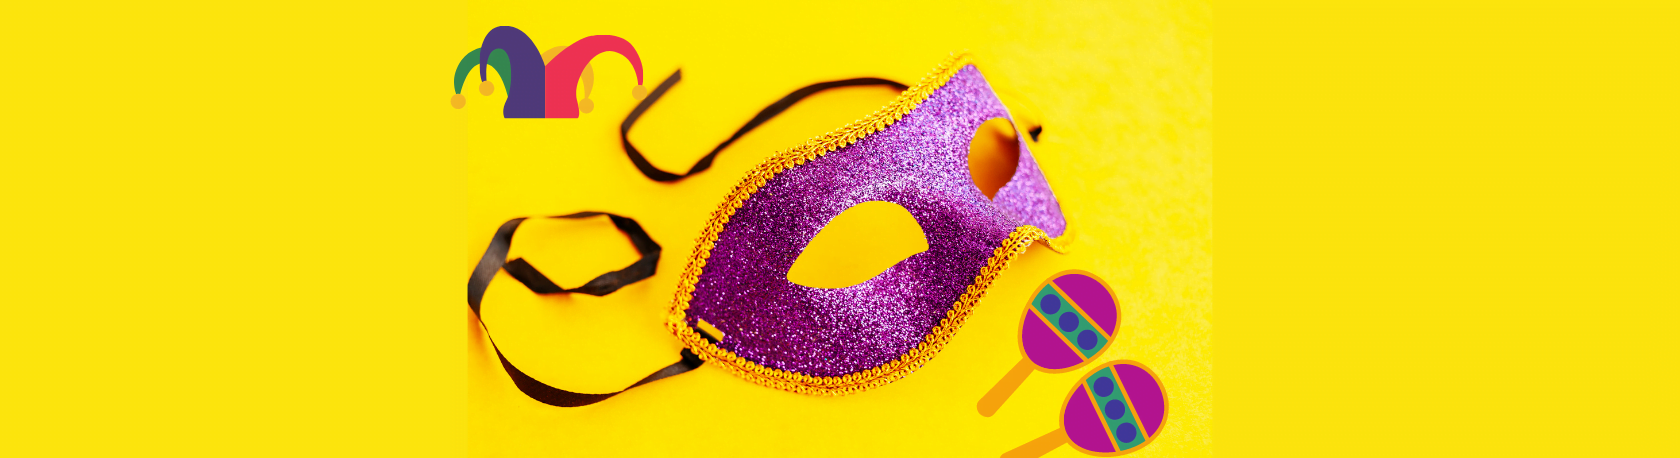 ¿Sabías que el Carnaval tiene 5000 años? - Easy Español